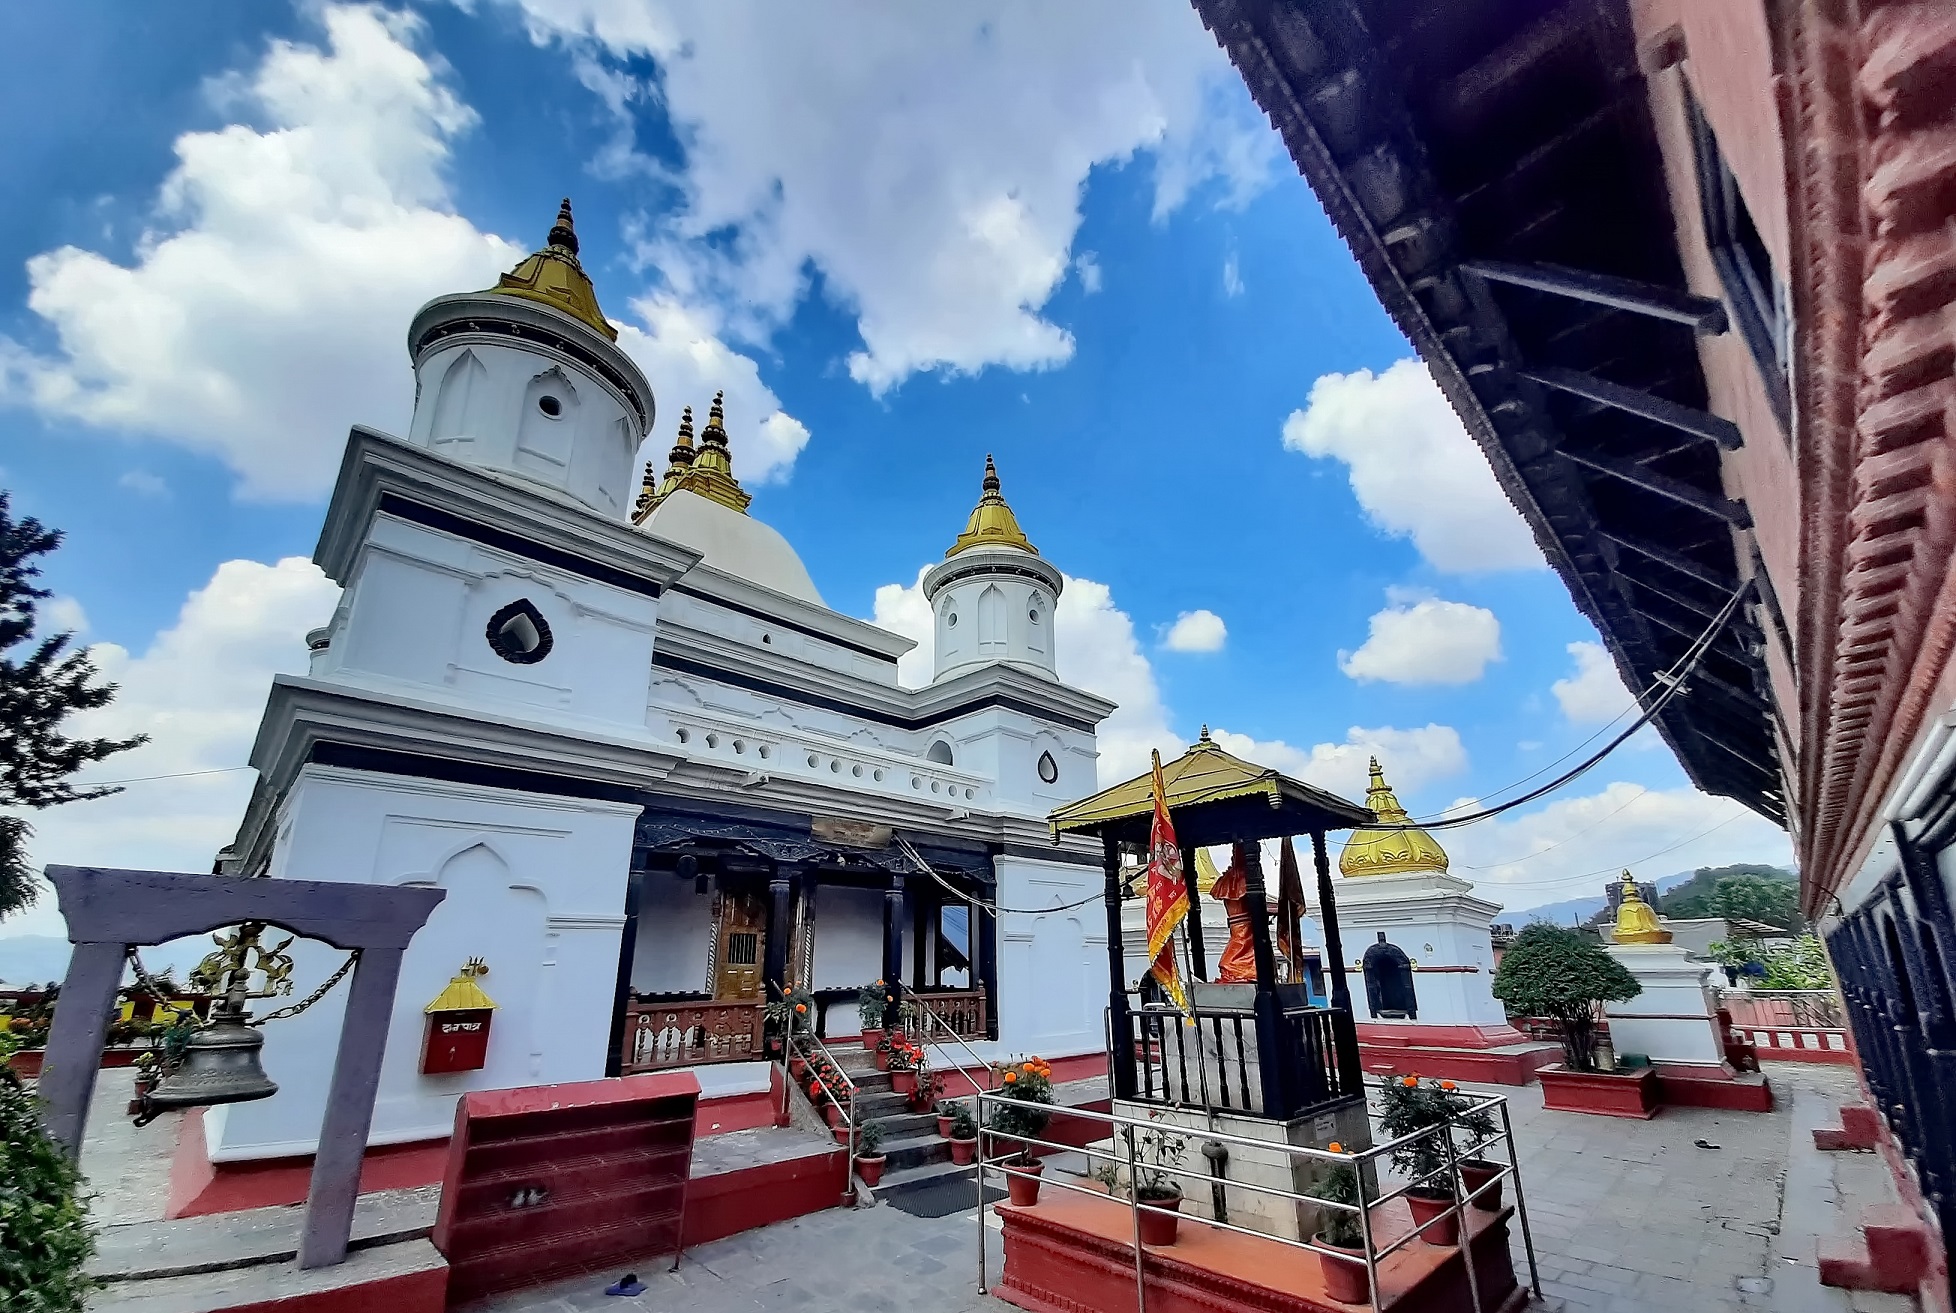 निजी गुठीमा धनी श्रीरामचन्द्र मन्दिरसँगै छैन जग्गाको अभिलेख